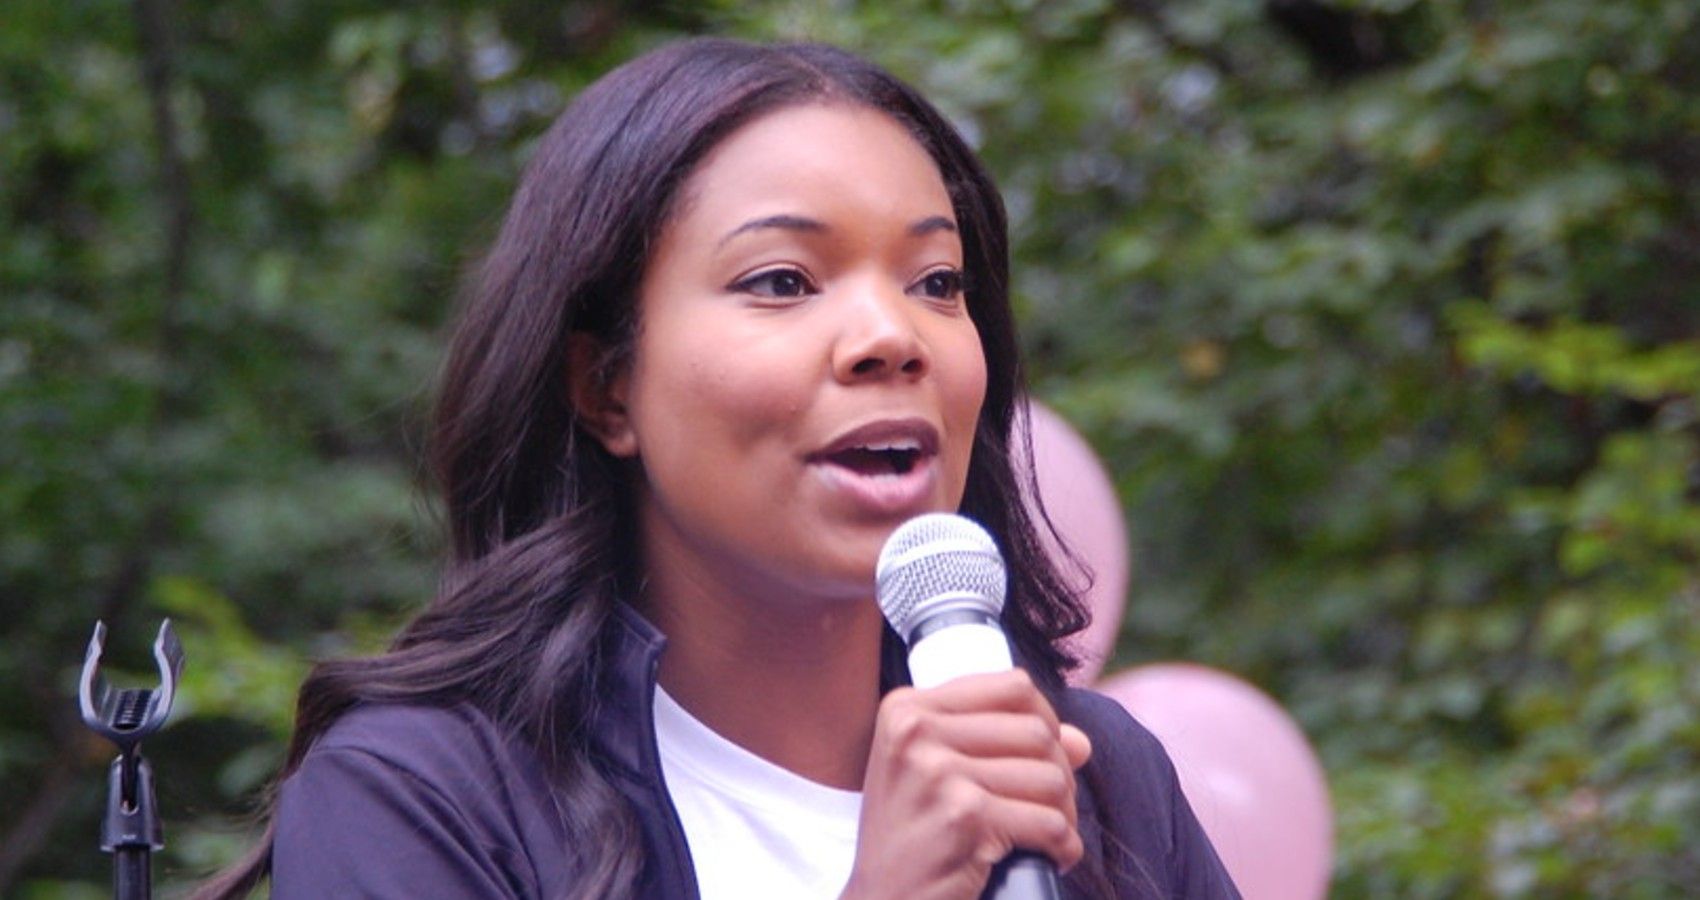 Gabrielle Union Giving A Speech At An Event